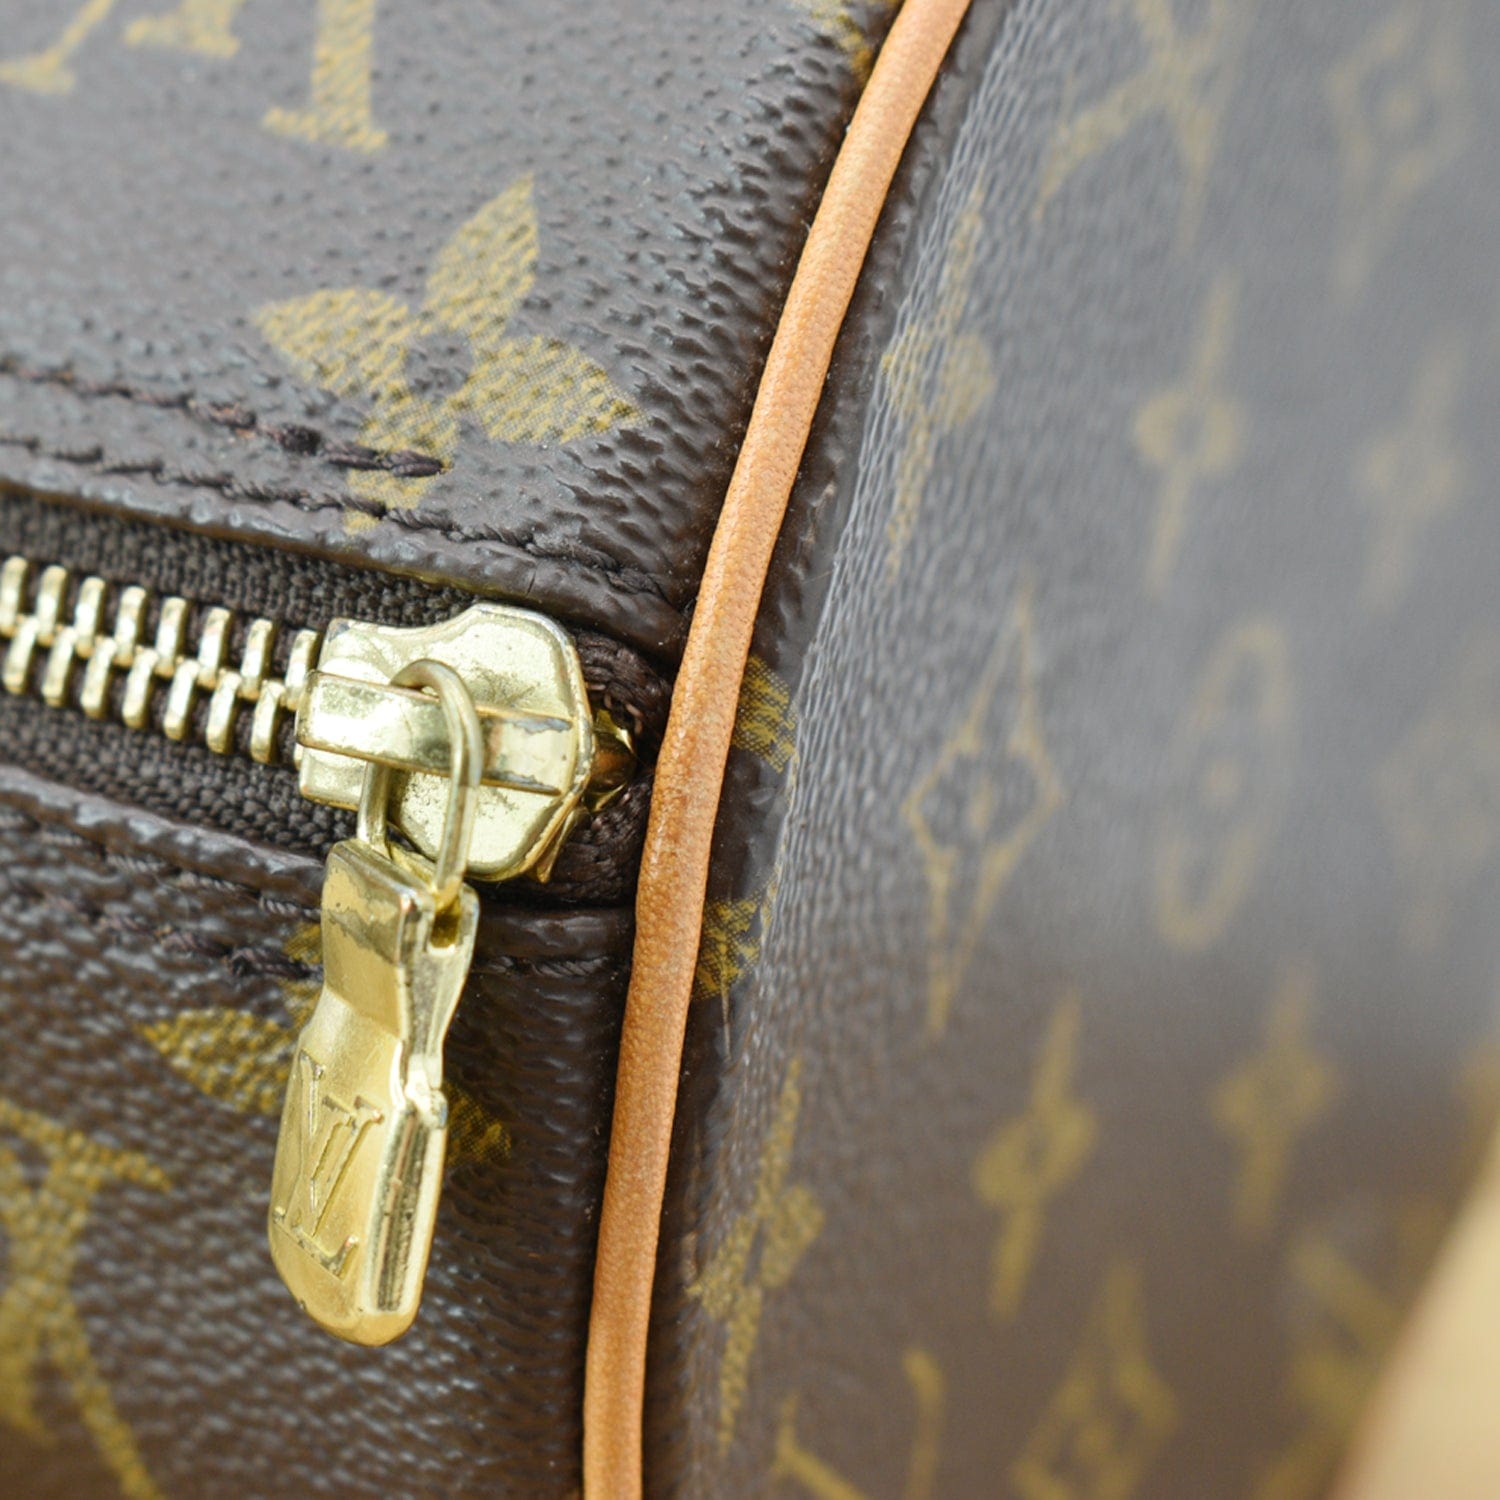 Papillon cloth handbag Louis Vuitton Brown in Cloth - 31634145